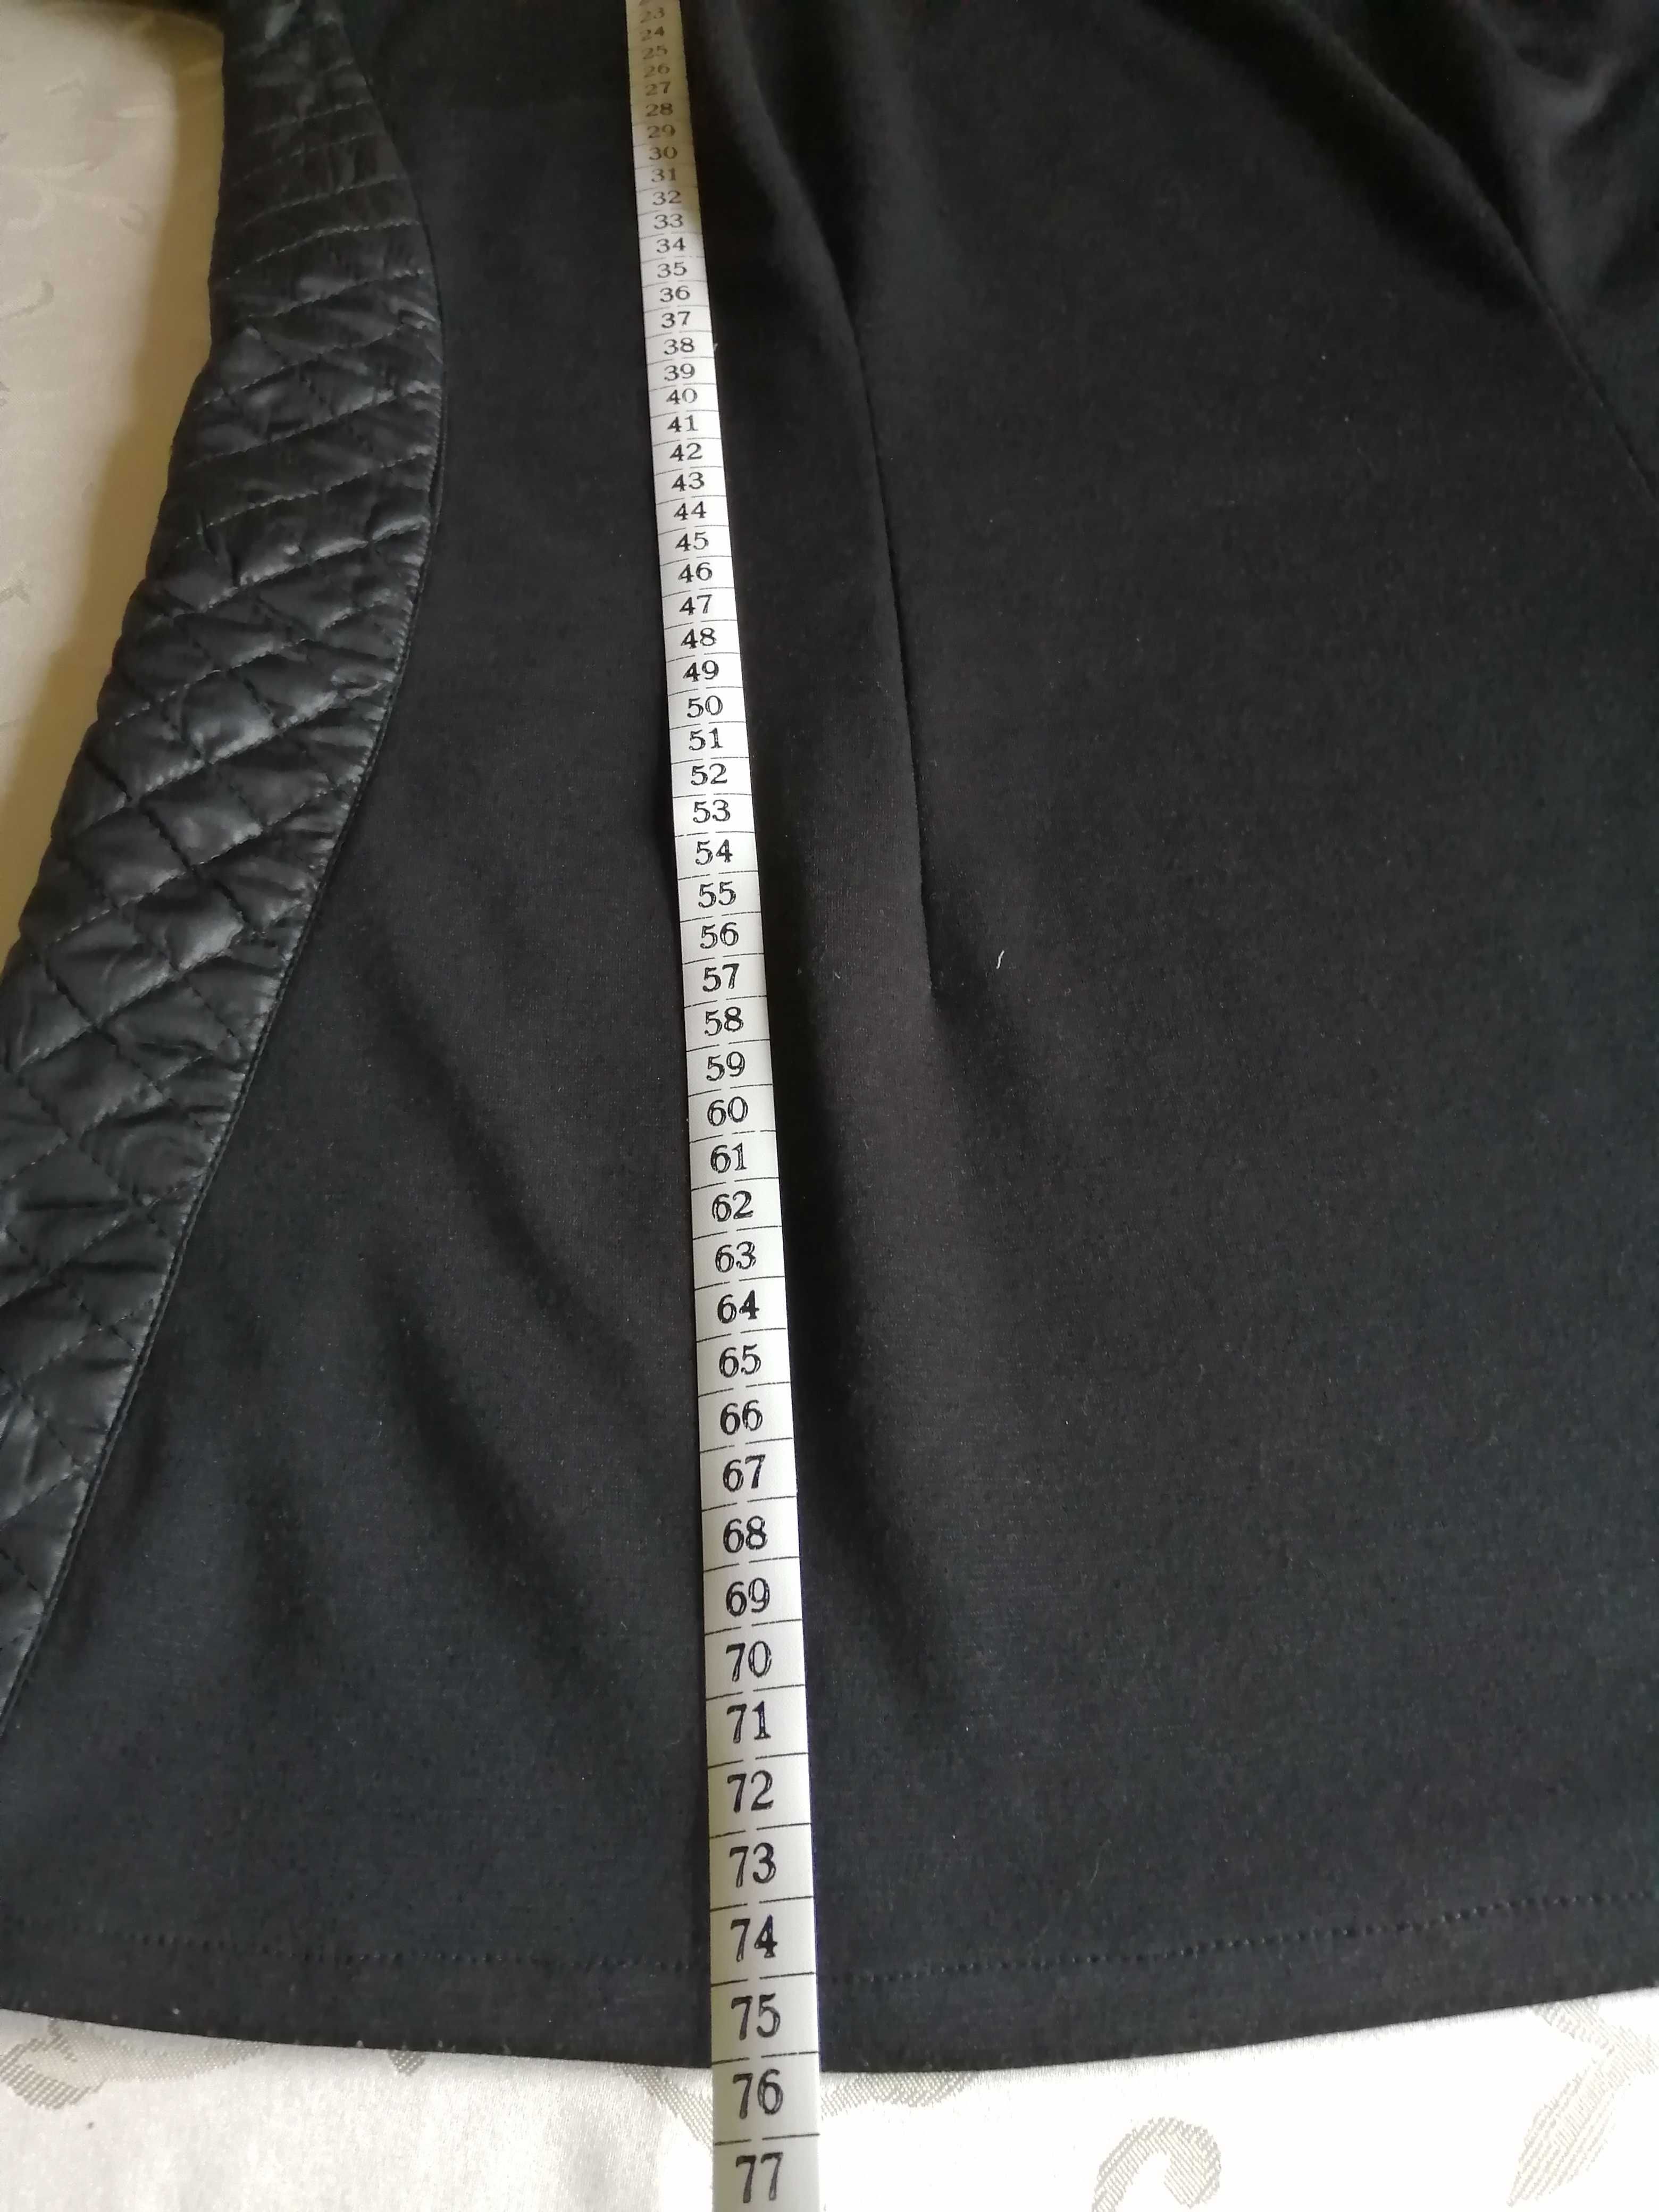 Czarna bluza - tunika, łącząca dwa rodzaje materiałów.